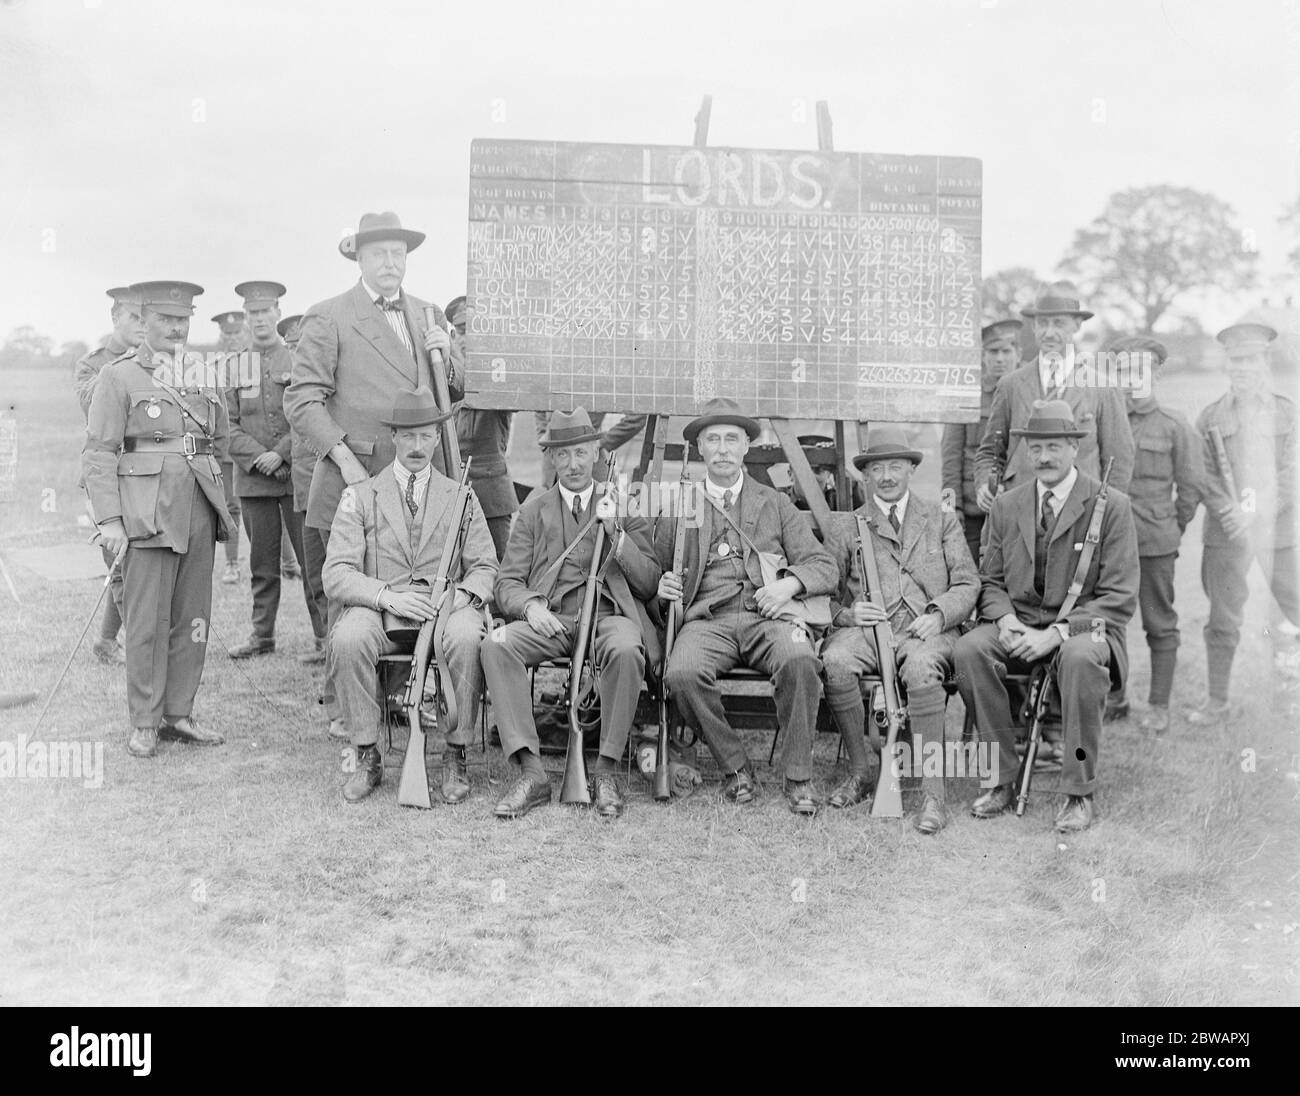 Les lords battez les communes à Bisley l'équipe des Lords ( de gauche à droite ) le colonel Hopton ( entraîneur ) , Lord Holmpatrick , Lord Stanhope , duc de Wellington ( capitaine ) . Lord Cottesloe , Lord Loch et Lord Semphill 17 juillet 1920 Banque D'Images